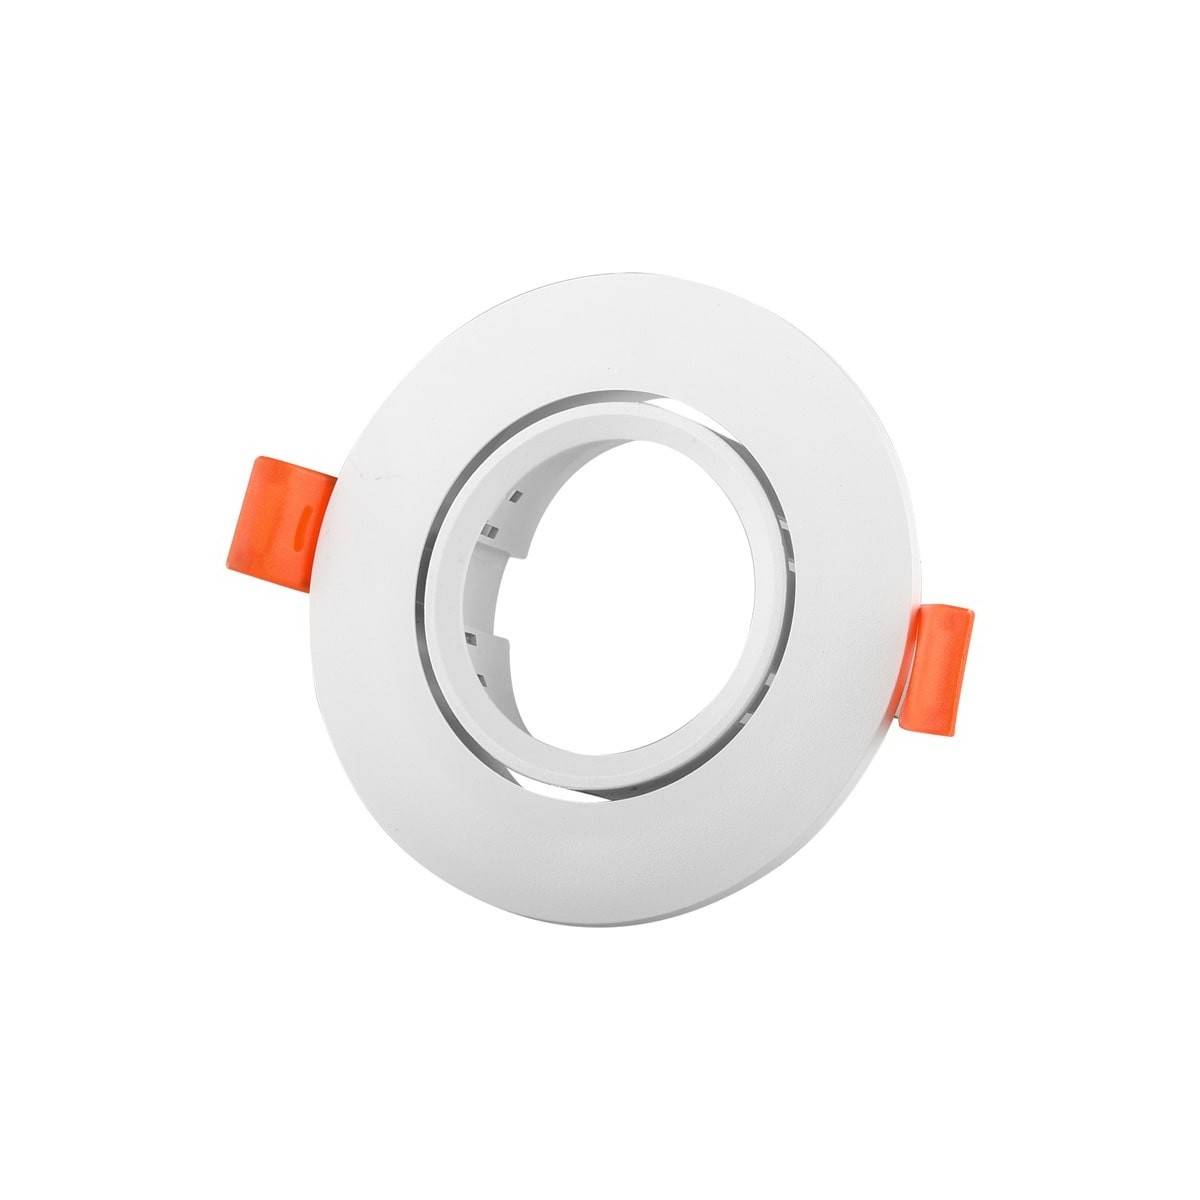 Aro downlight encastrável circular basculante GU10, MR16